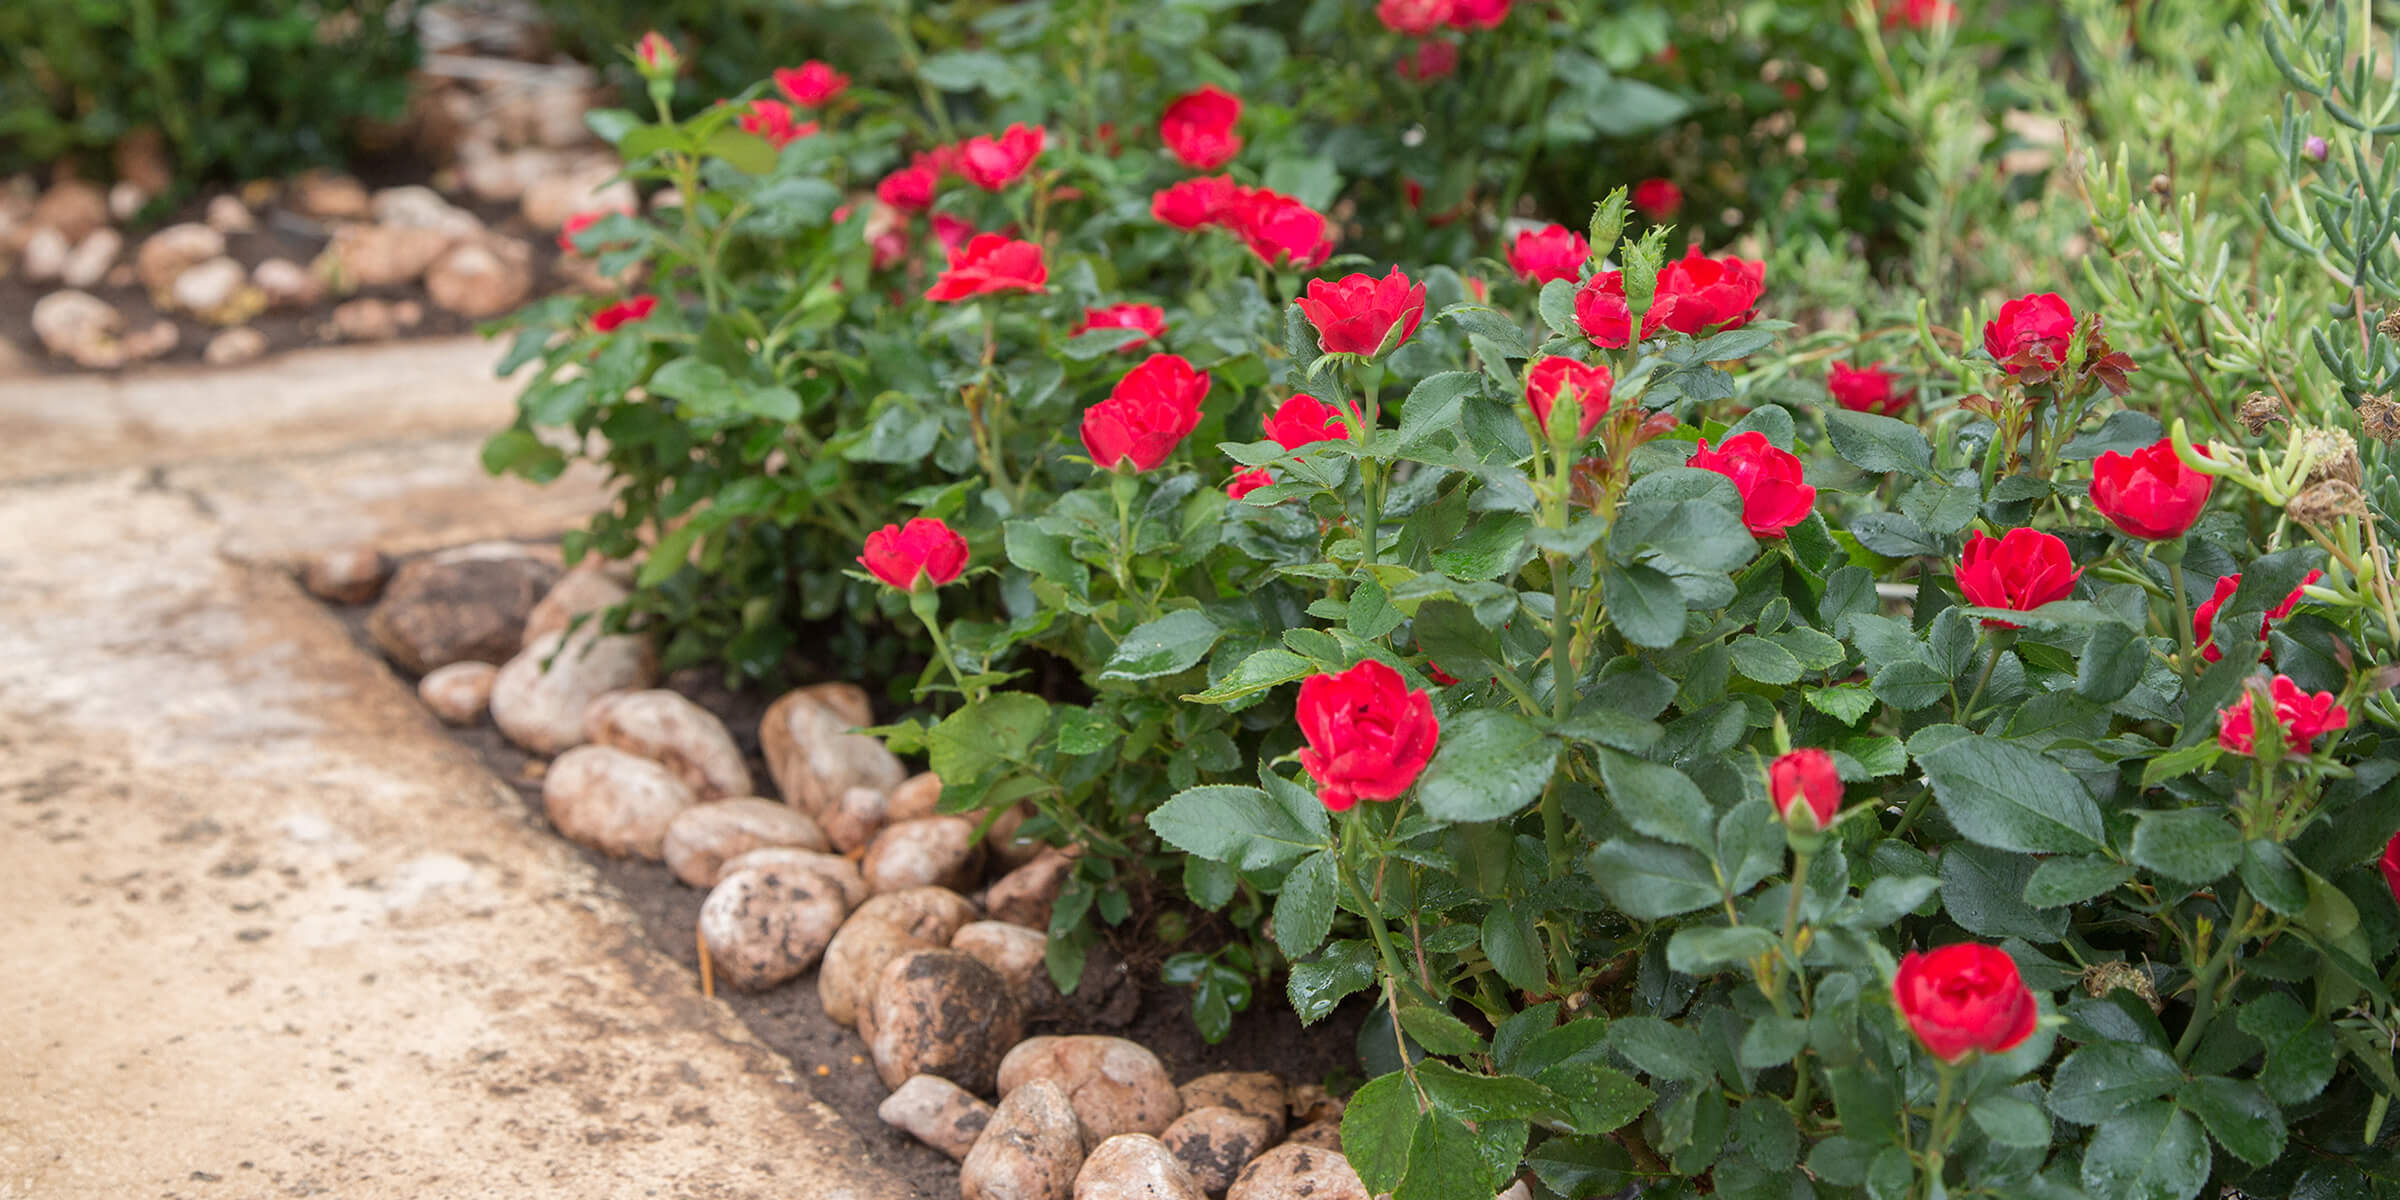 dauerblühende Rose Zepeti ® im 5 Liter Pflanzcontainer